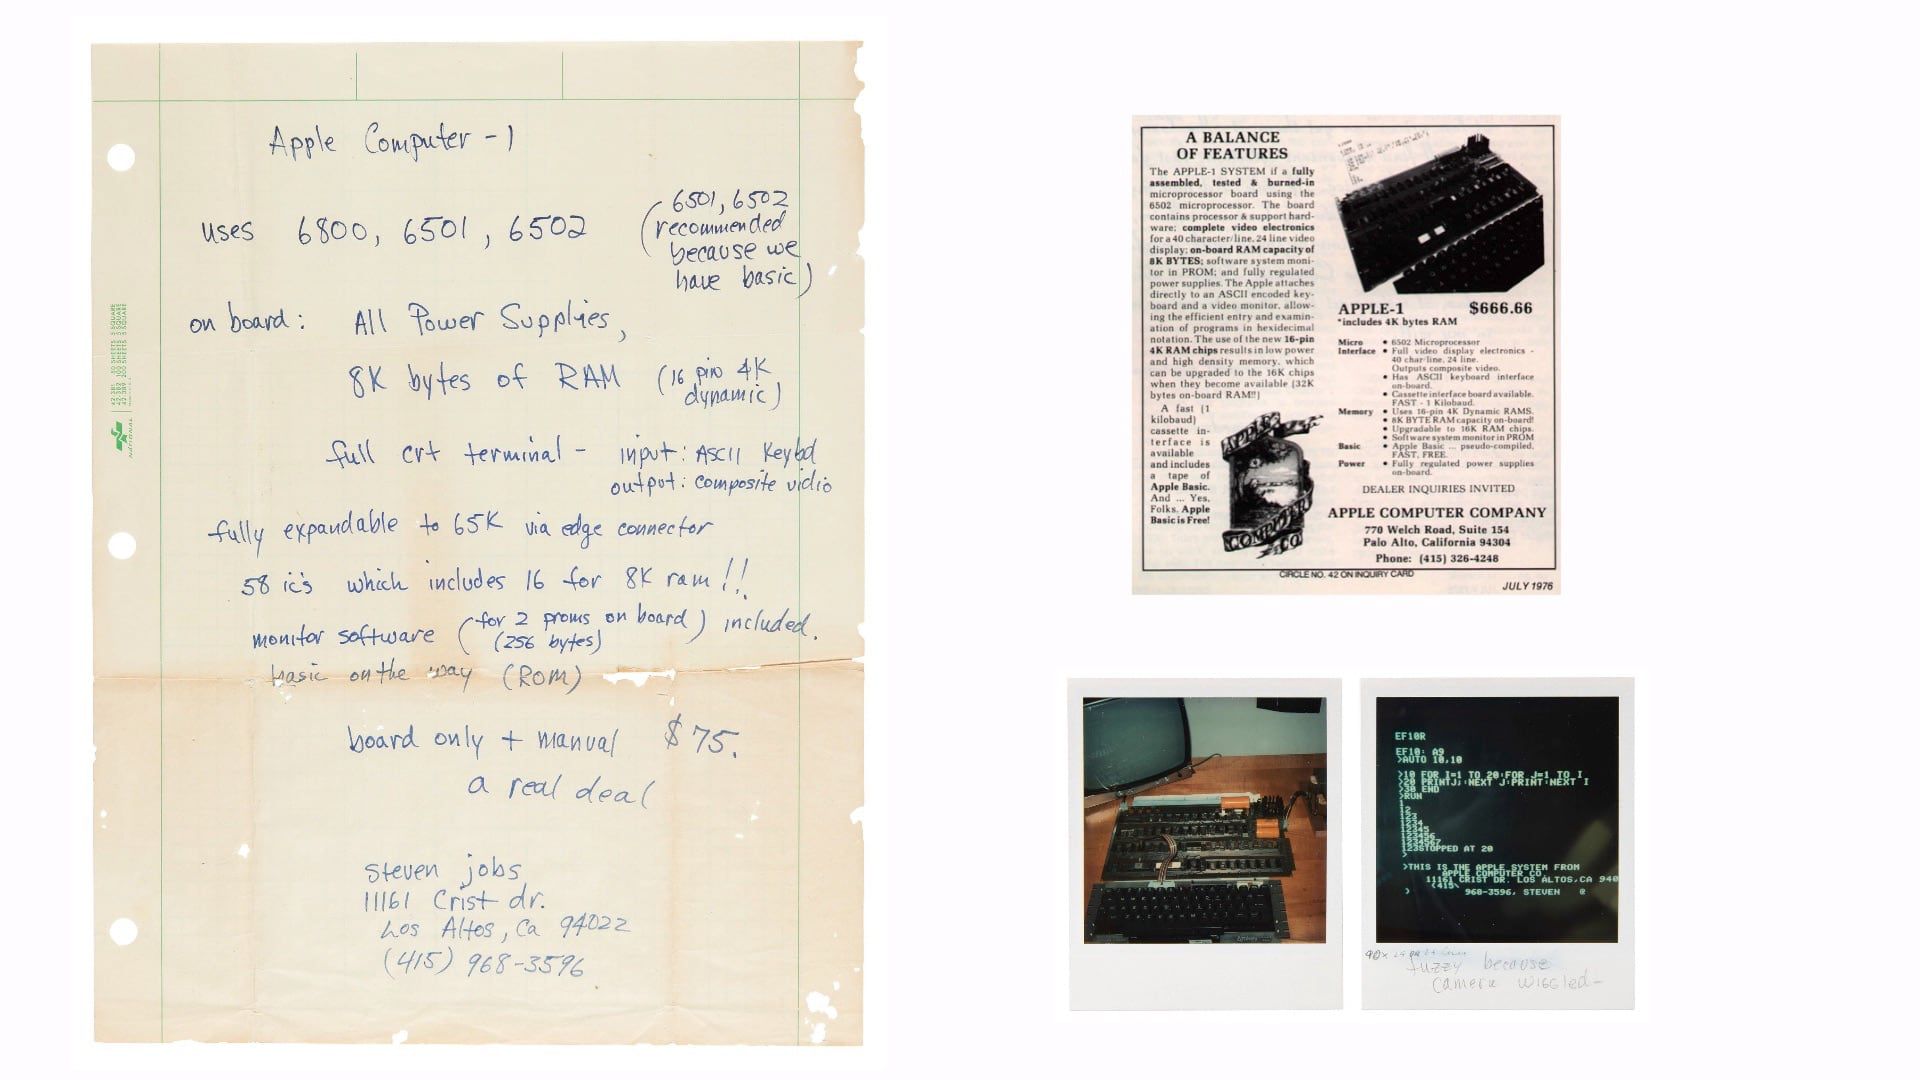 Apple-1 computerreklame skrevet af Steve Jobs solgt på auktion for 175.000 dollars